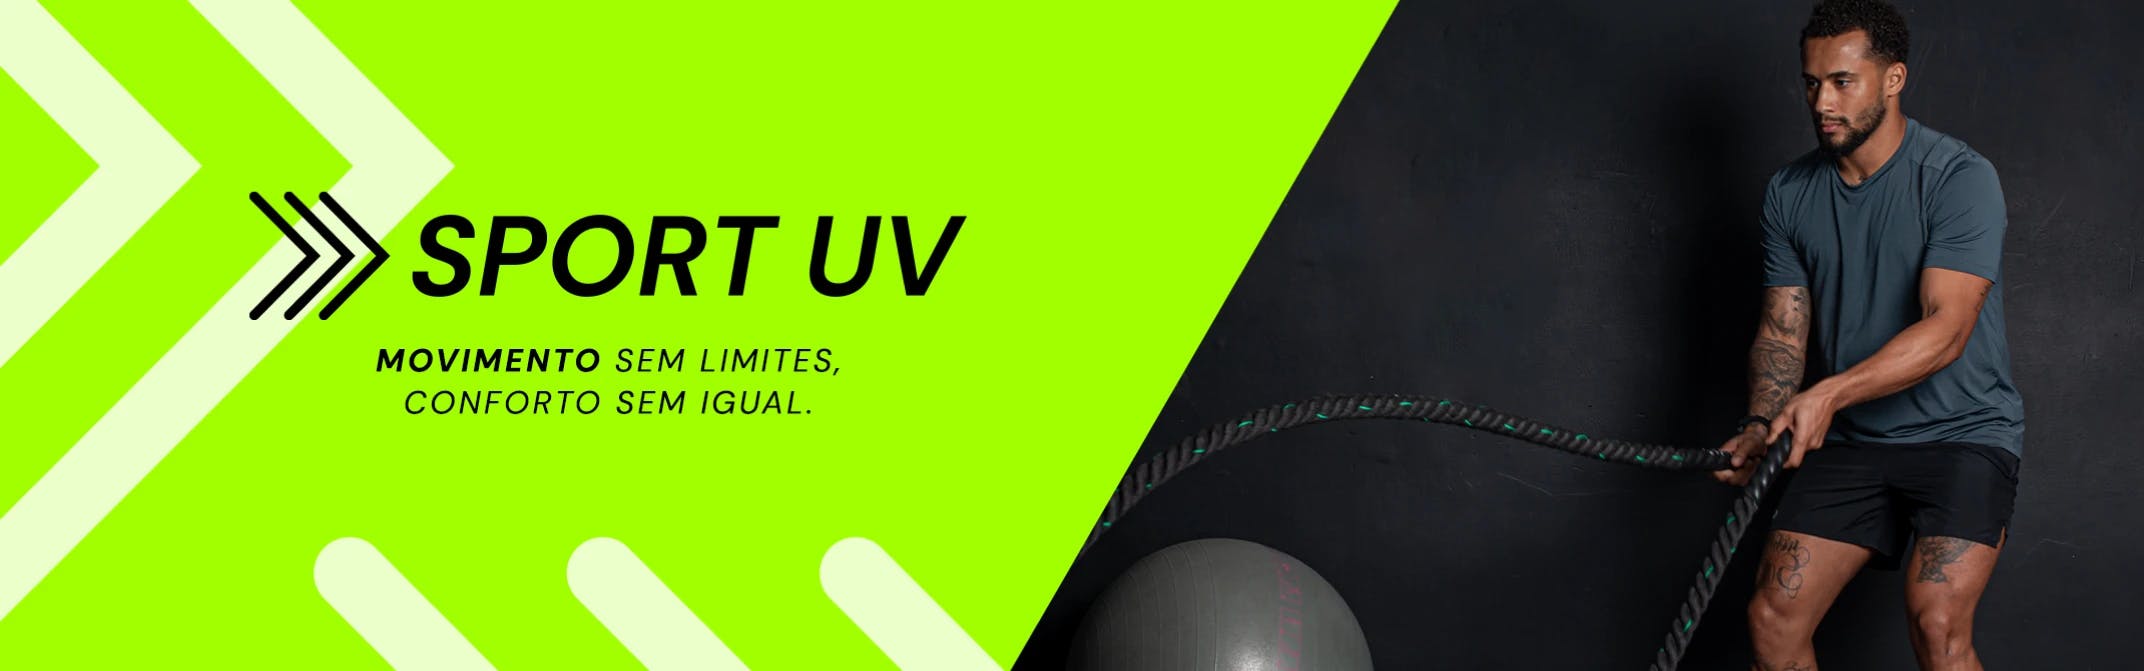 Sport UV: Movimento sem limites, conforto sem igual.